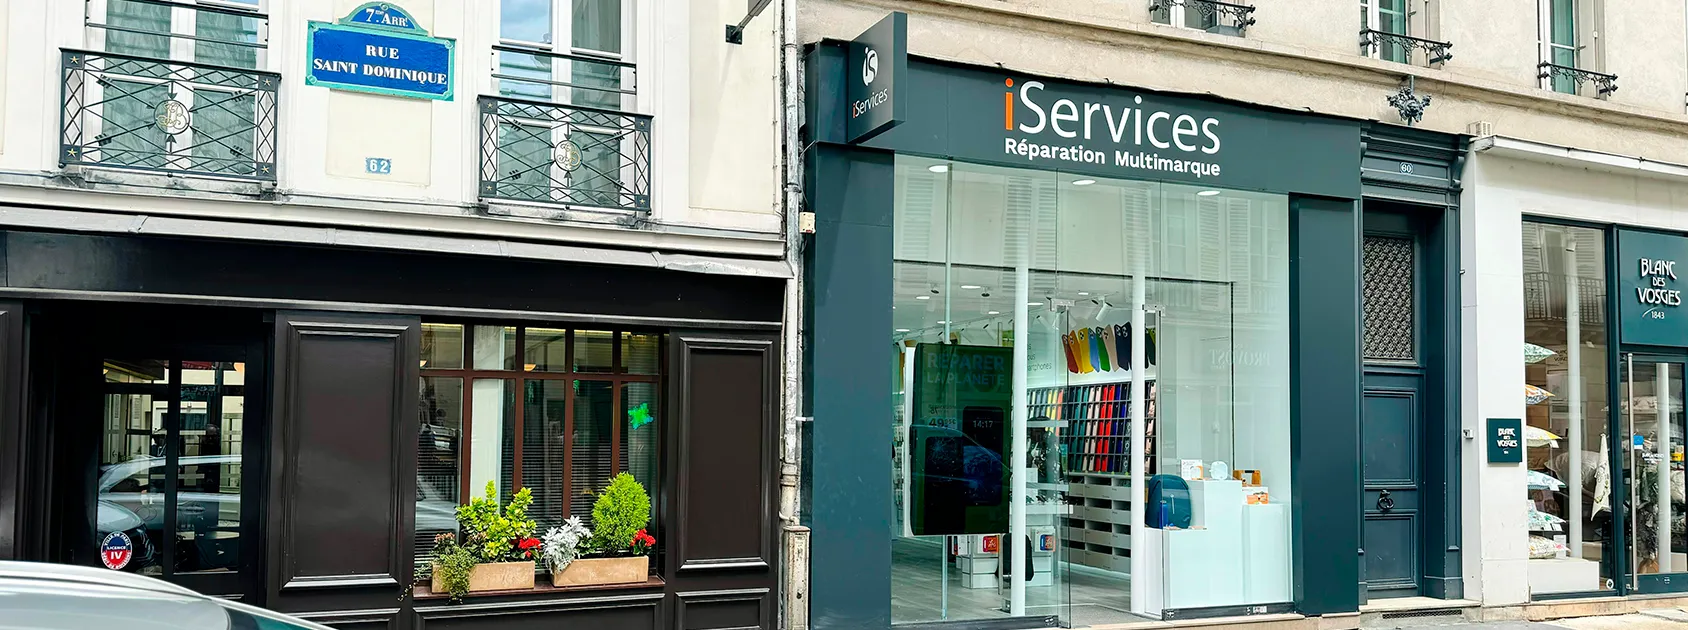 iServices a déjà ouvert son magasin à Saint Dominique